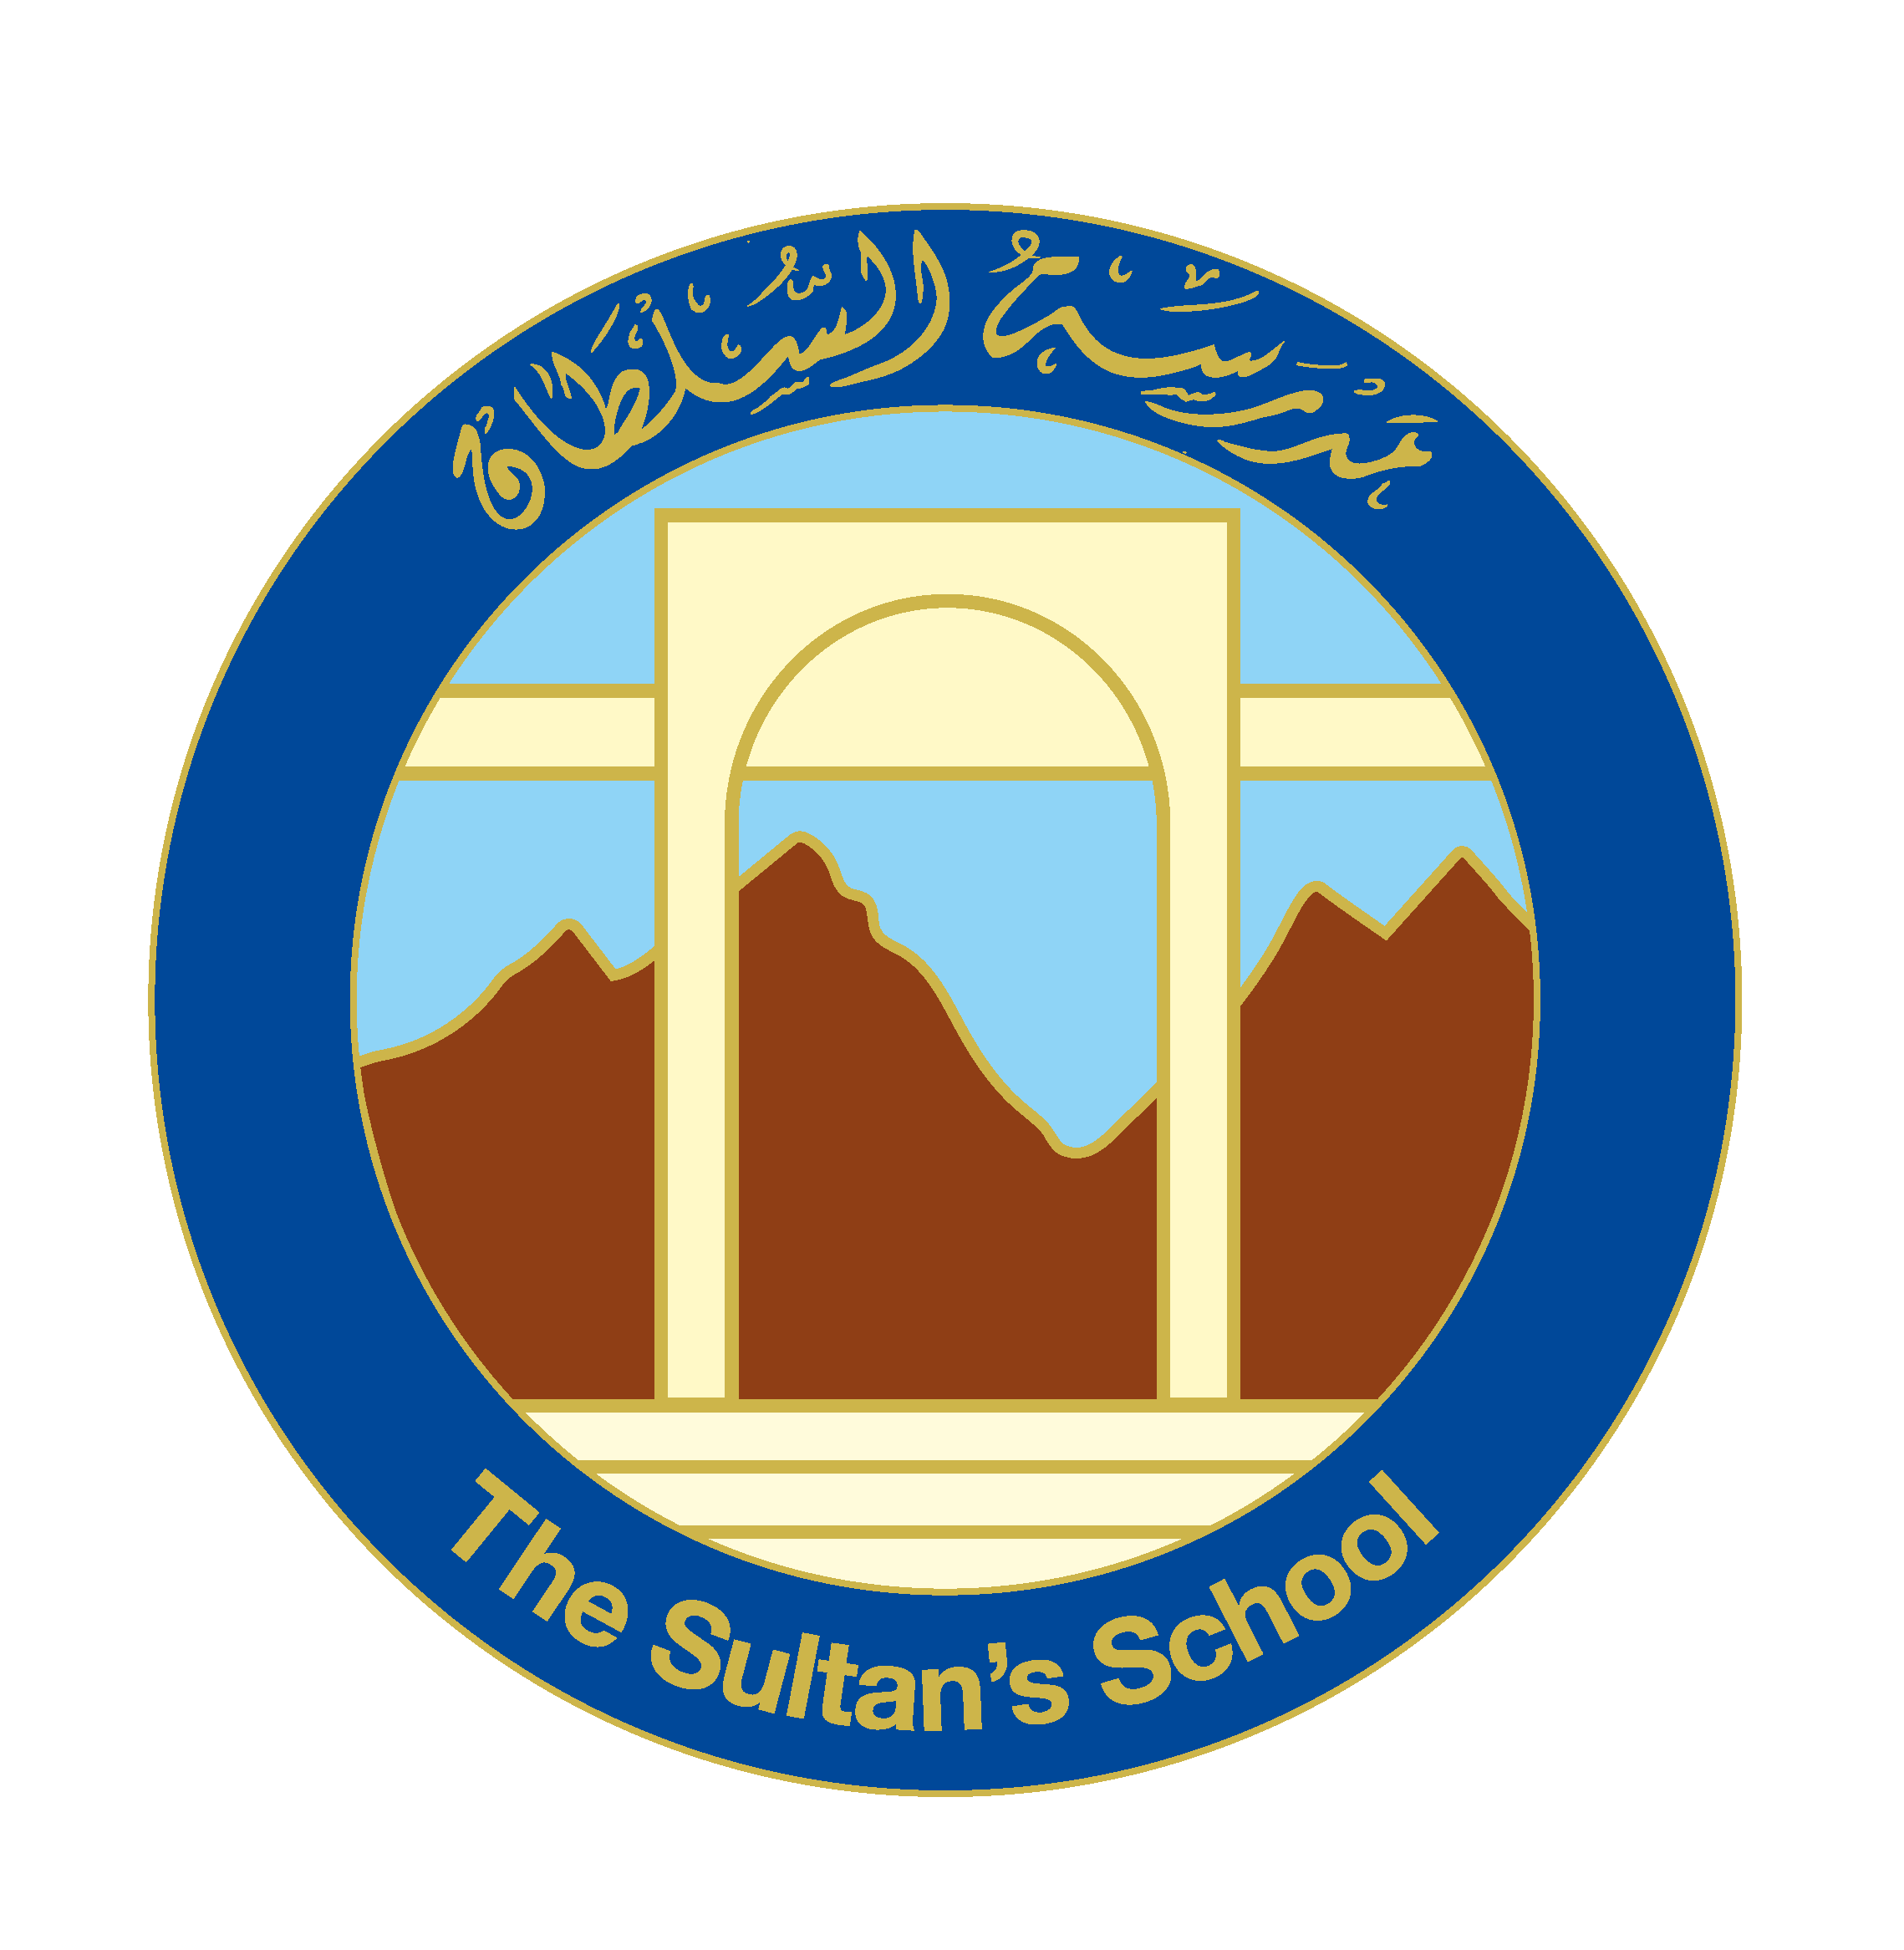 The Sultan's School